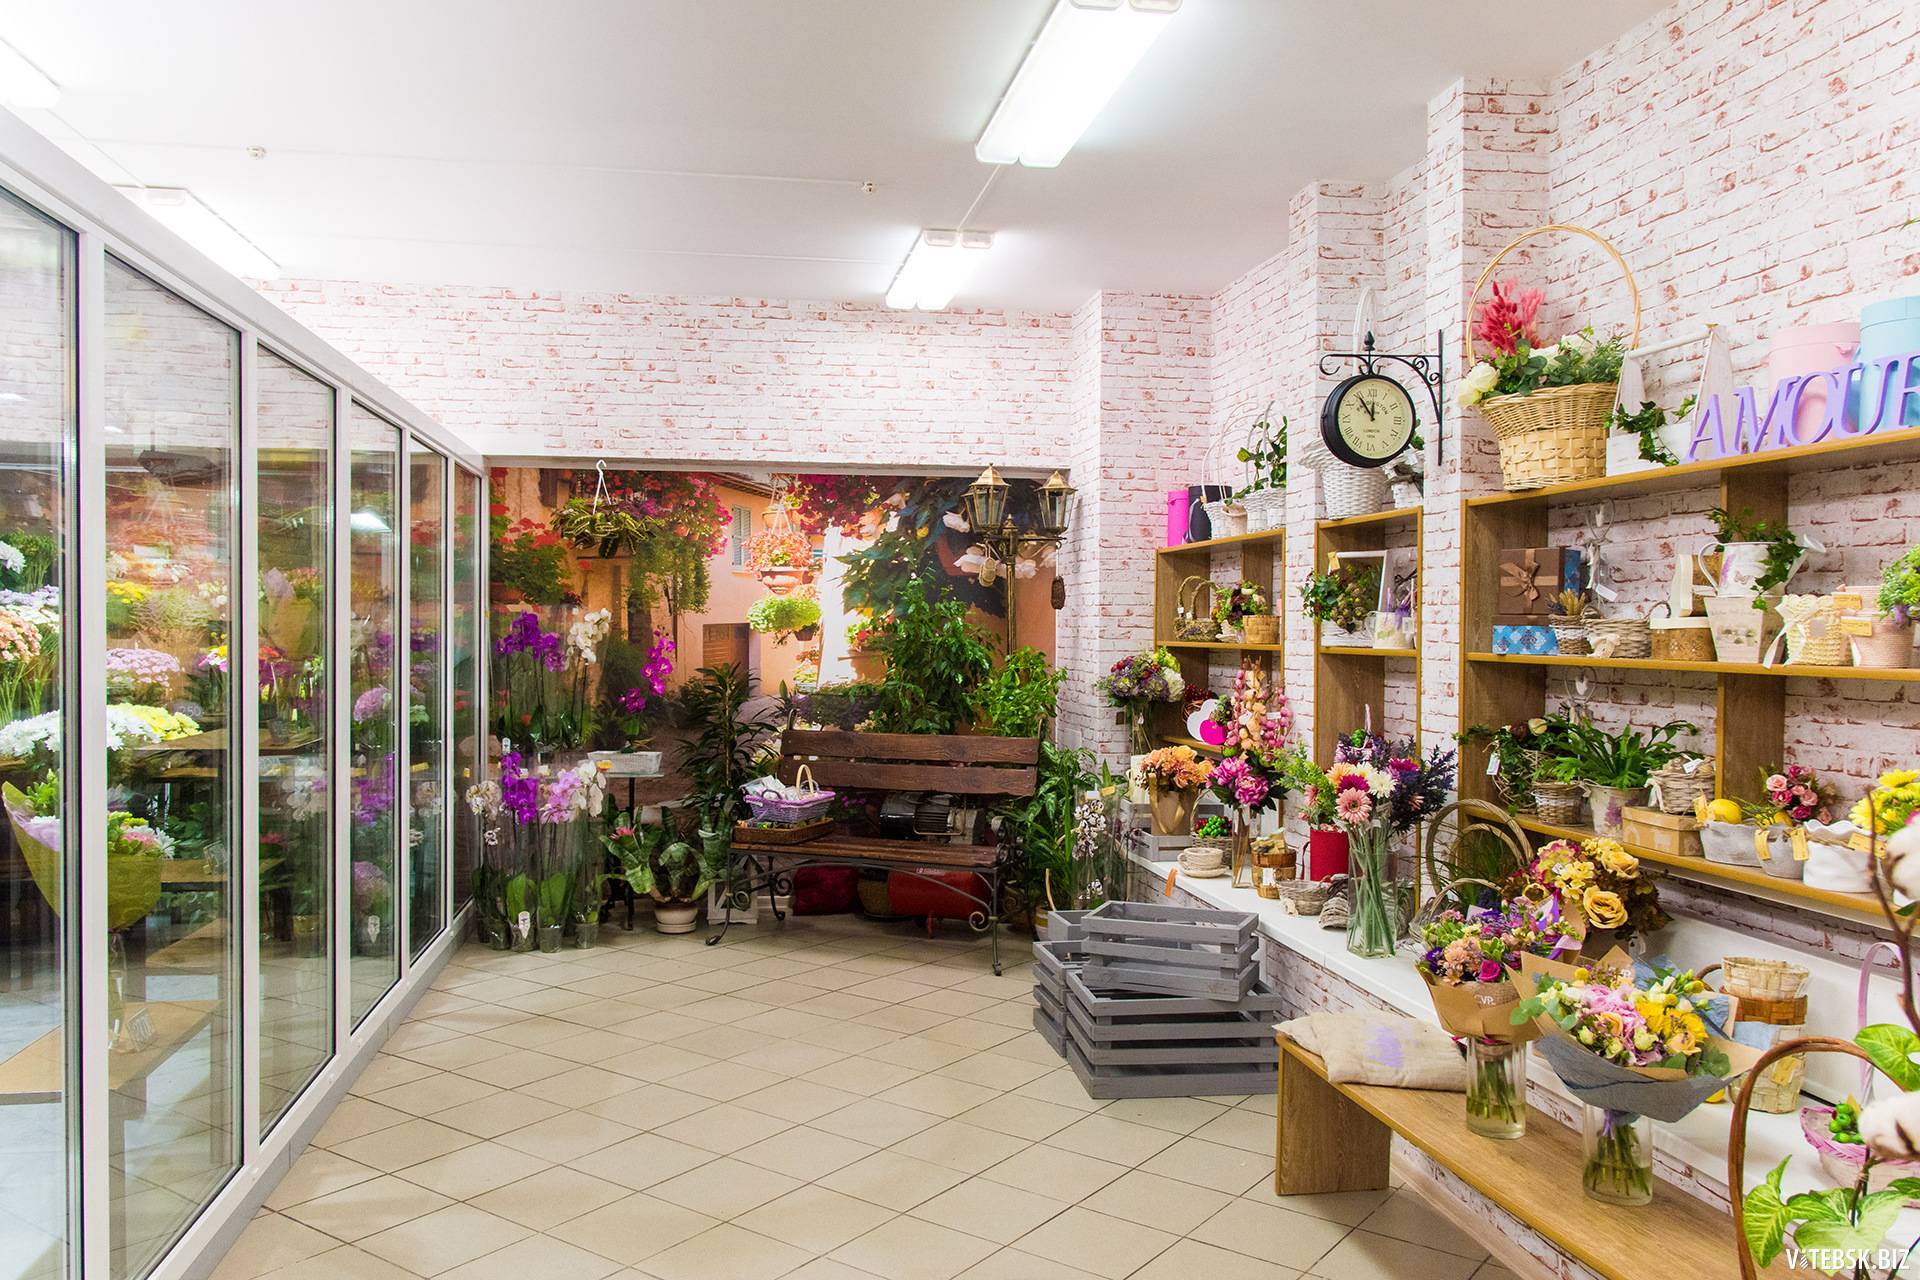 С чего можно начать цветочный бизнес, если не хотите работать флористом «на дядю»